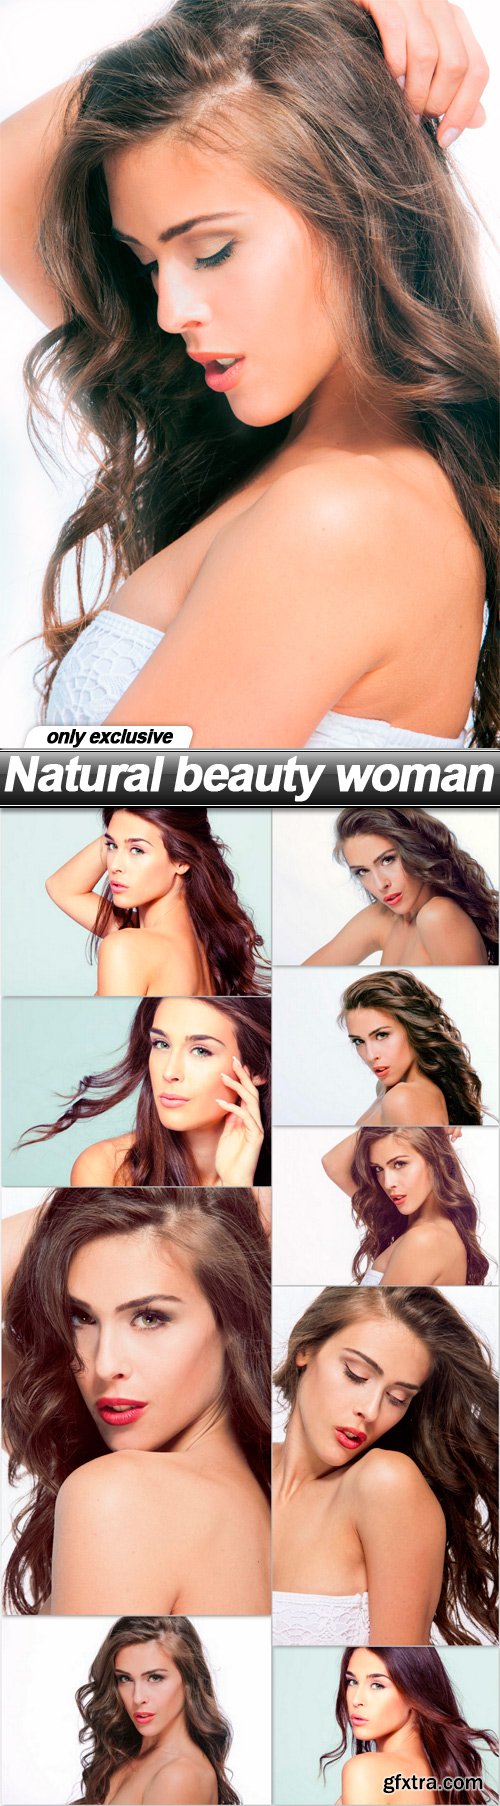 Natural beauty woman - 10 UHQ JPEG